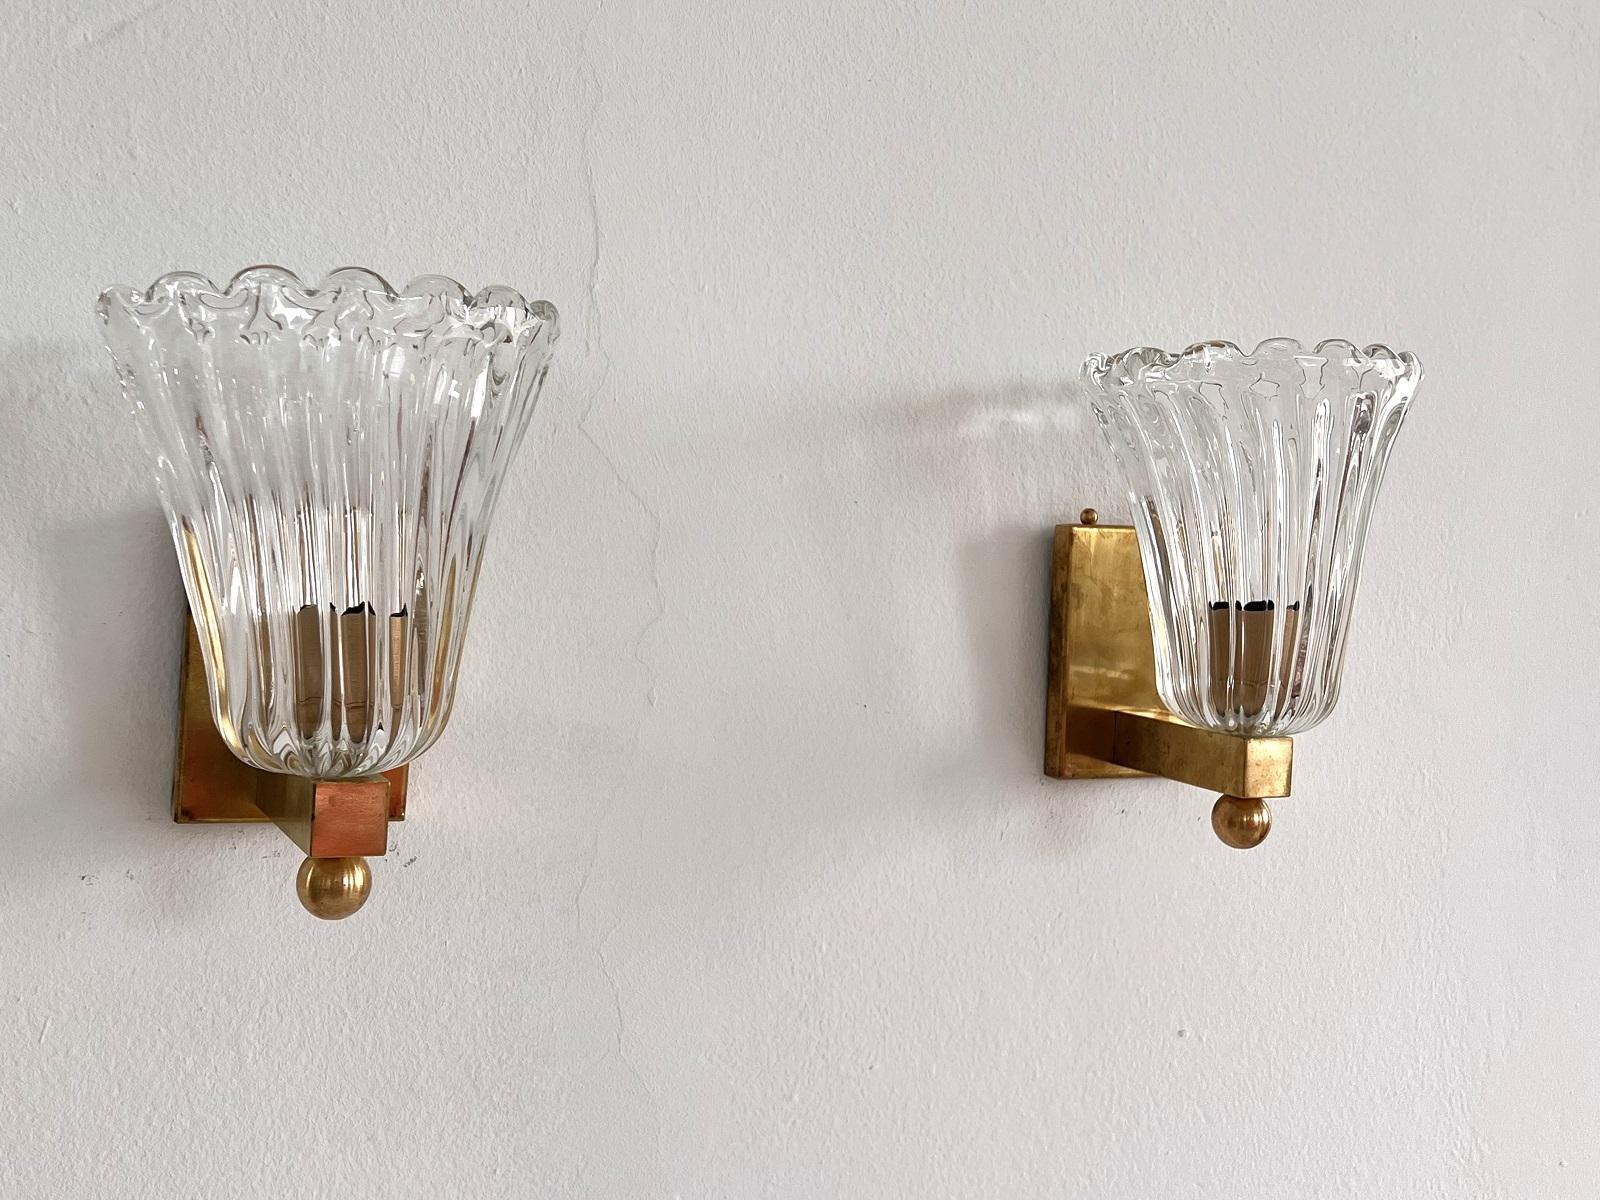 Schönes Set von zwei wunderschönen Wandlampen aus starken transparenten dicken Murano-Gläsern und starken Messing Basis gemacht. Art-Déco-Stil. Wunderschön mit der Messingkugel an der Unterseite der Lampe
Die schönen handgefertigten Gläser haben